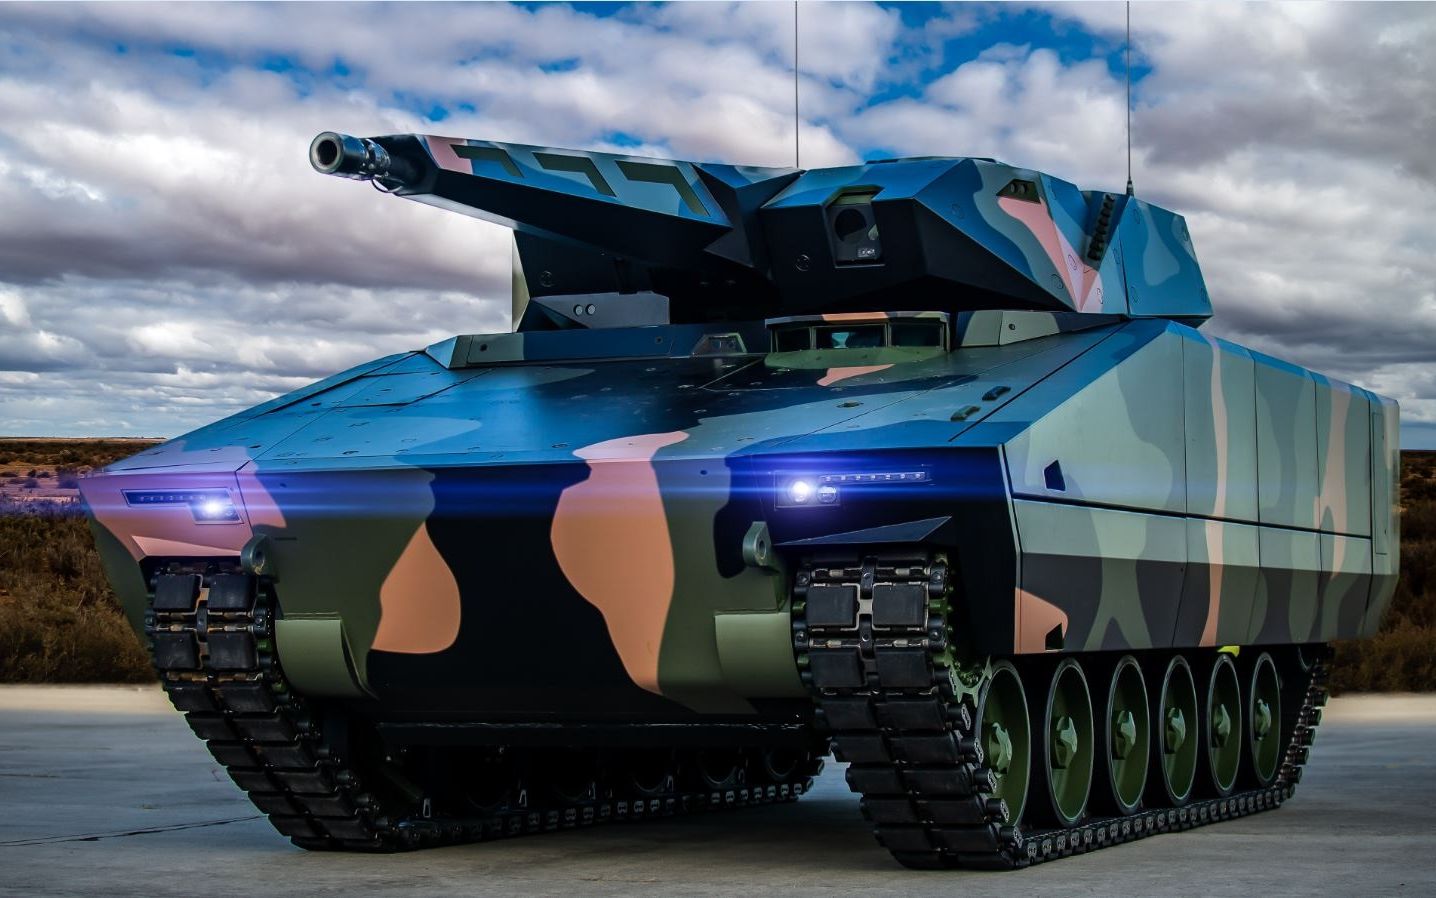 KF41猞猁——高生存能力与平衡性能的履带式步战车